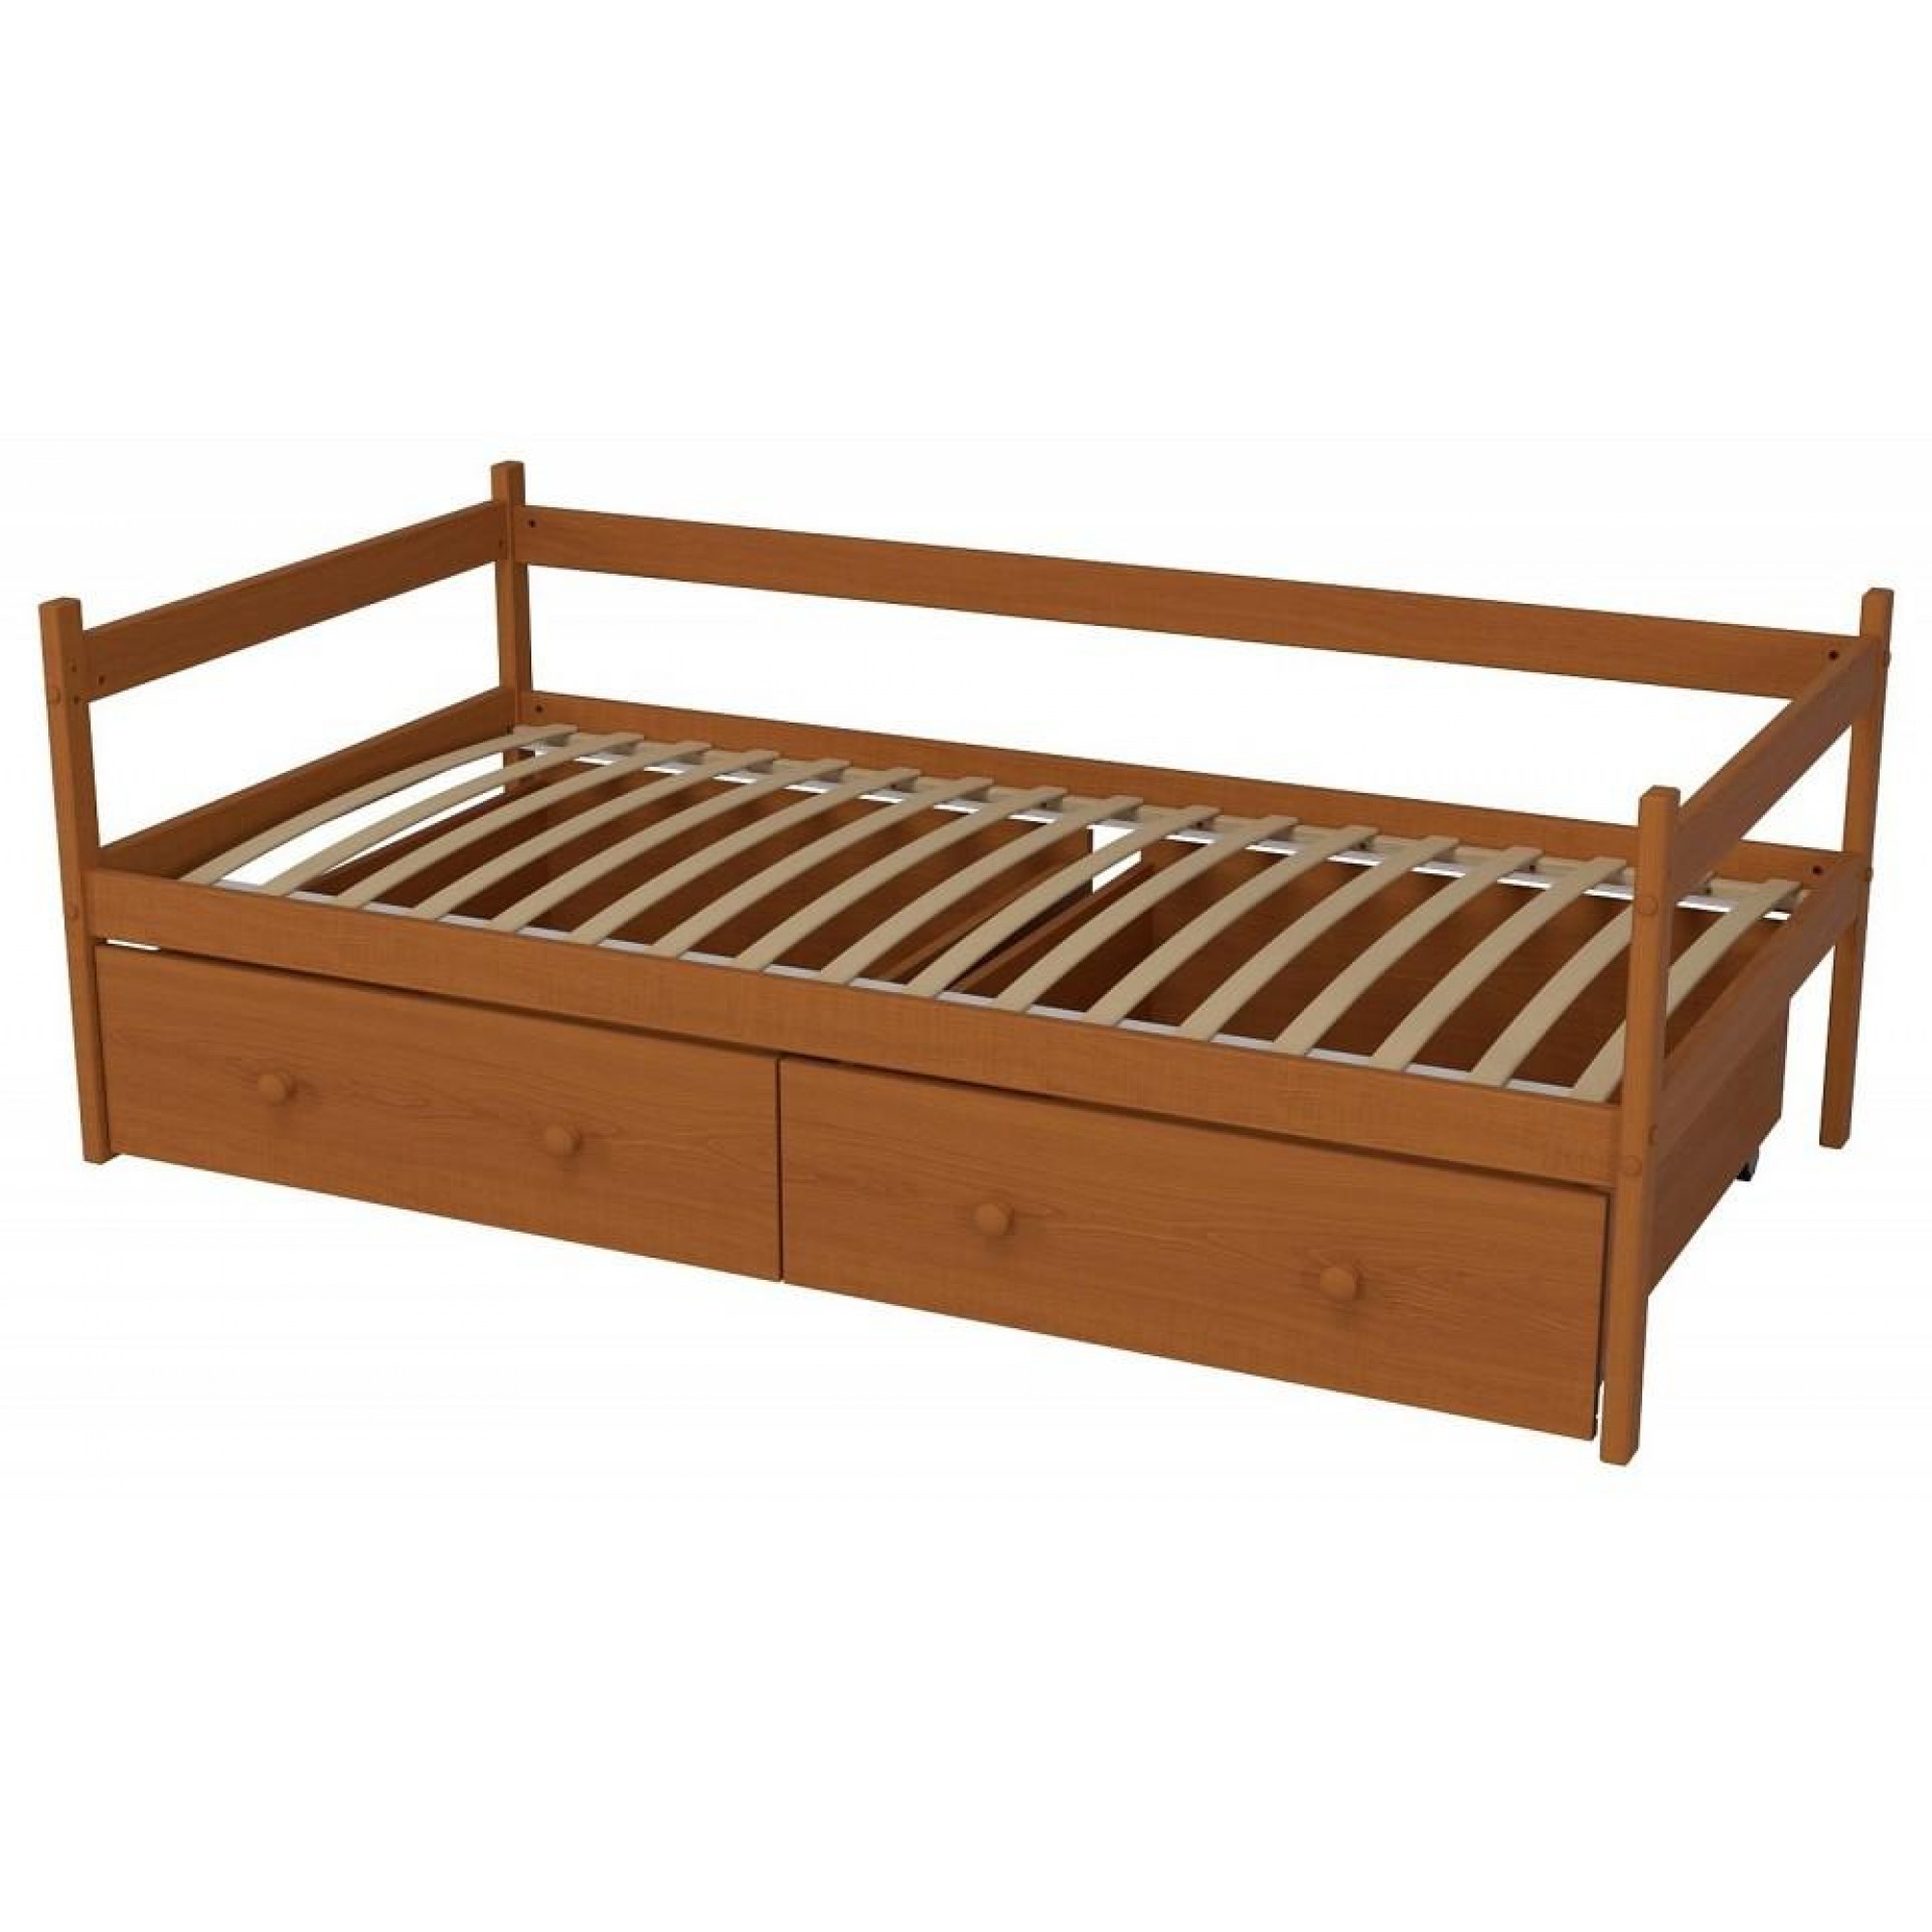 Кровать Р425 Э древесина коричневая нейтральная ольха 1660x870x600(MZG_405832)